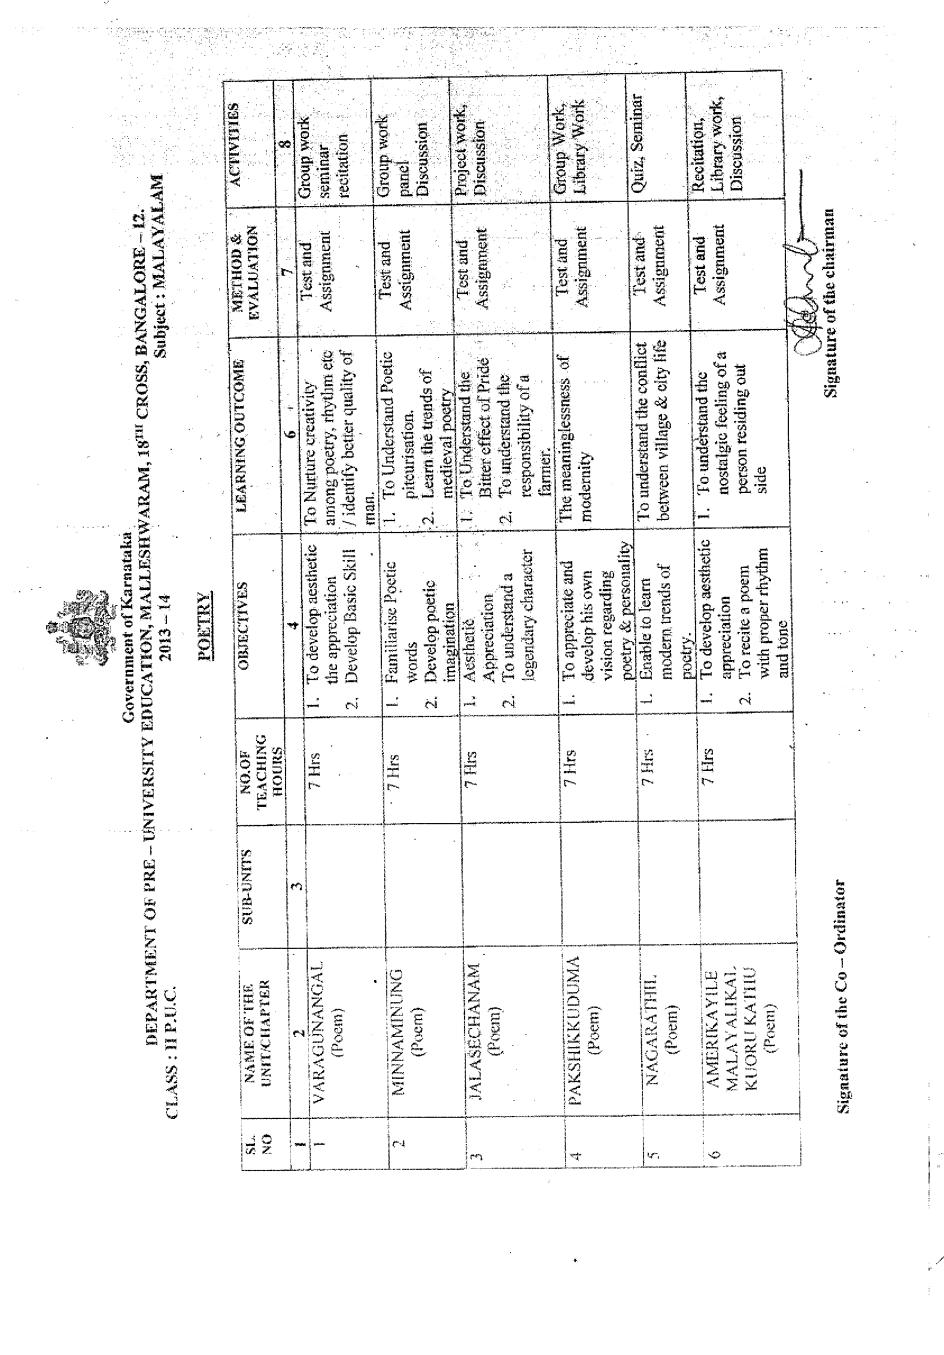 2nd PUC Syllabus for Malayalam - Page 1